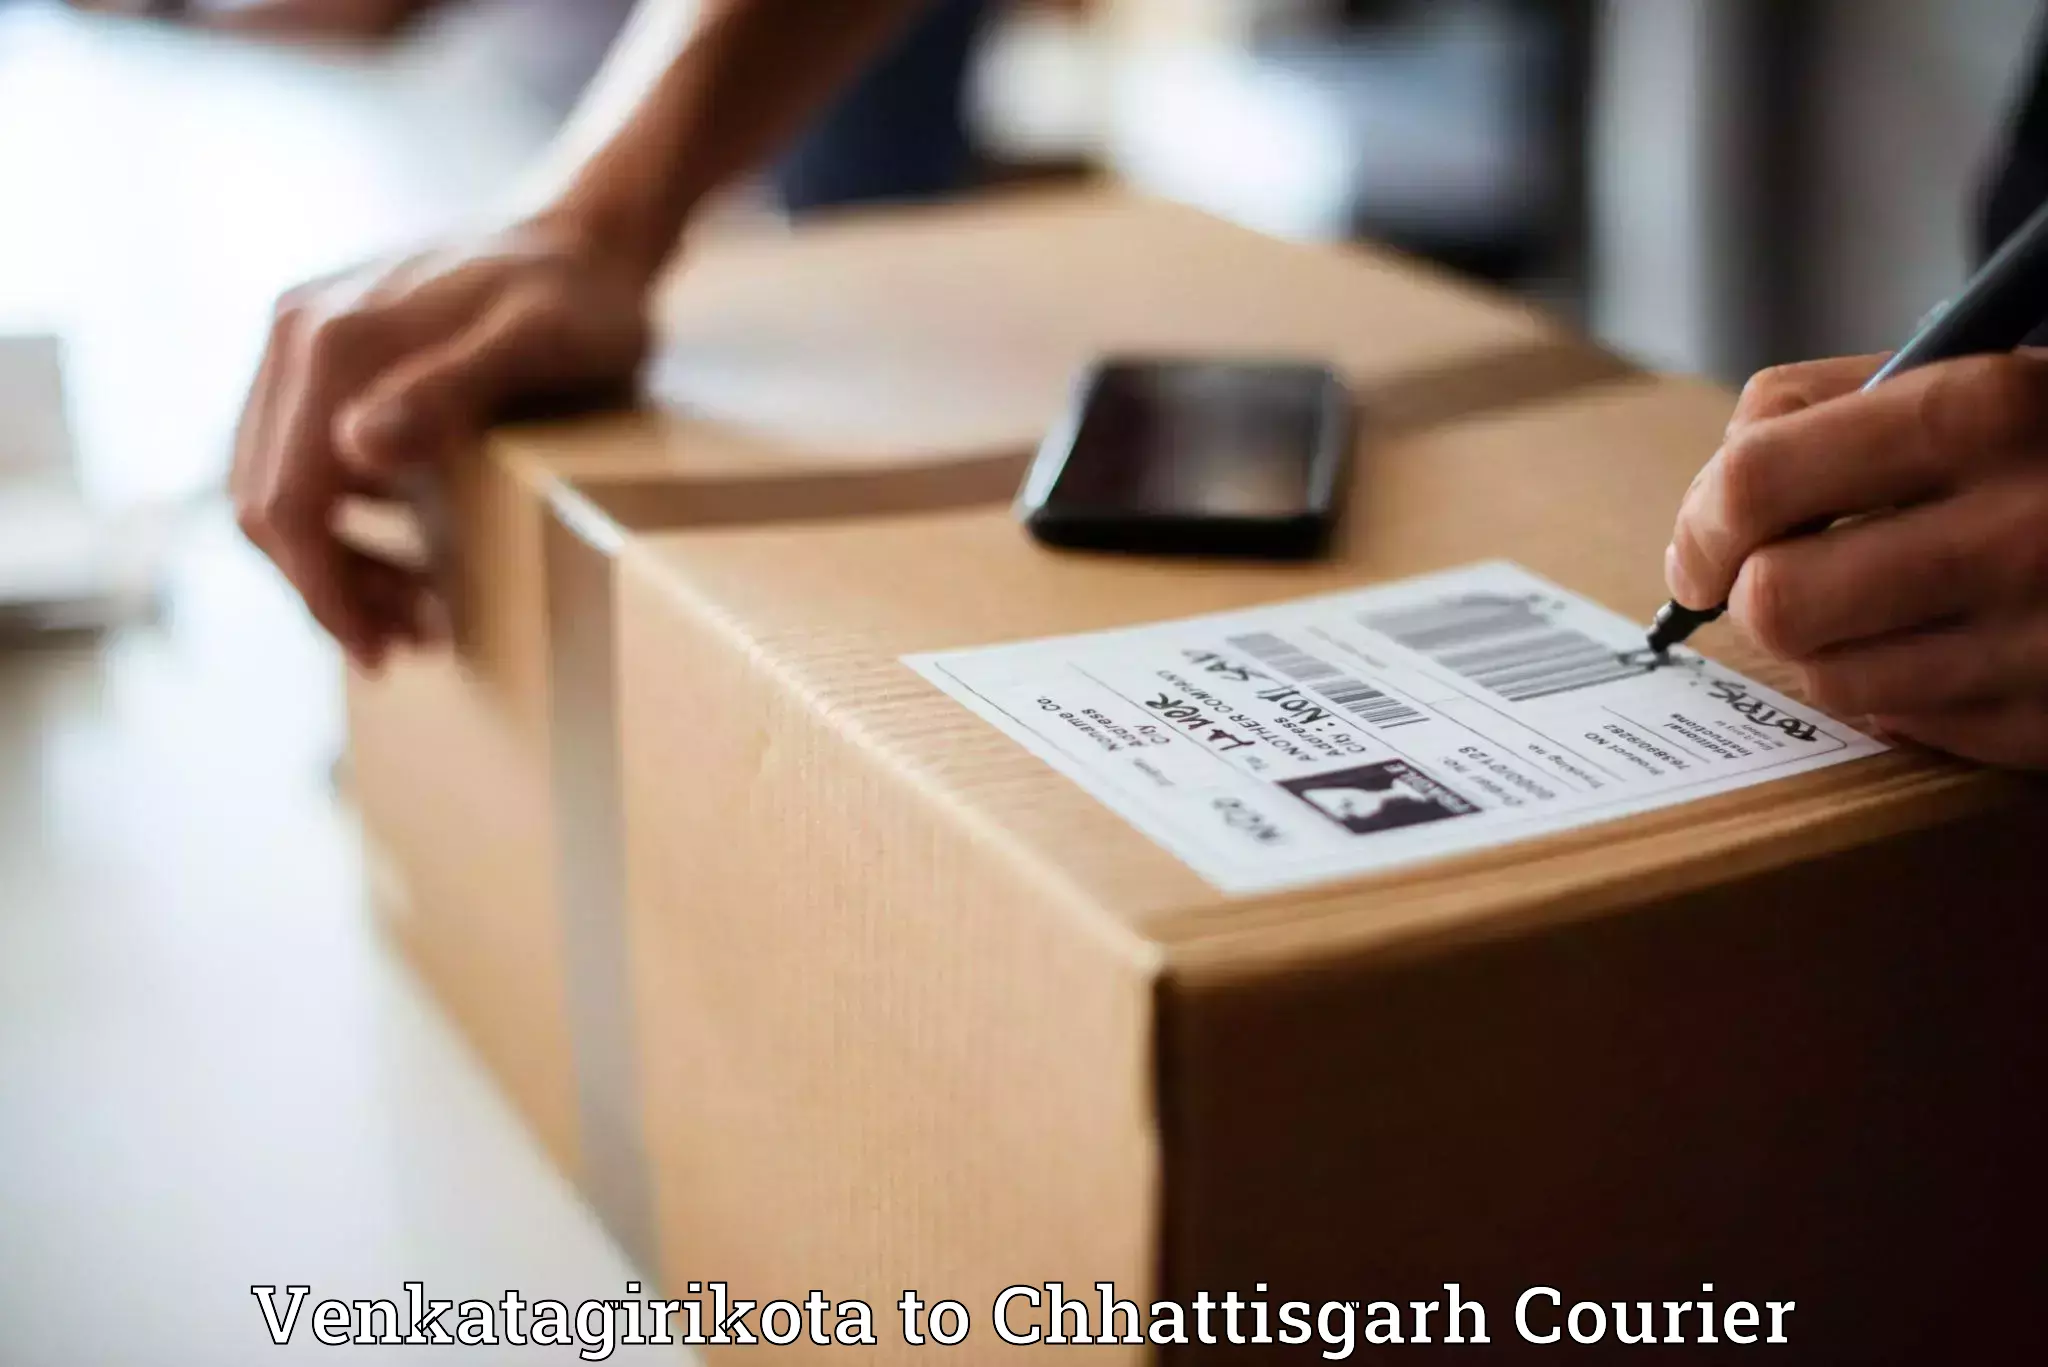 Expedited parcel delivery in Venkatagirikota to Nagri